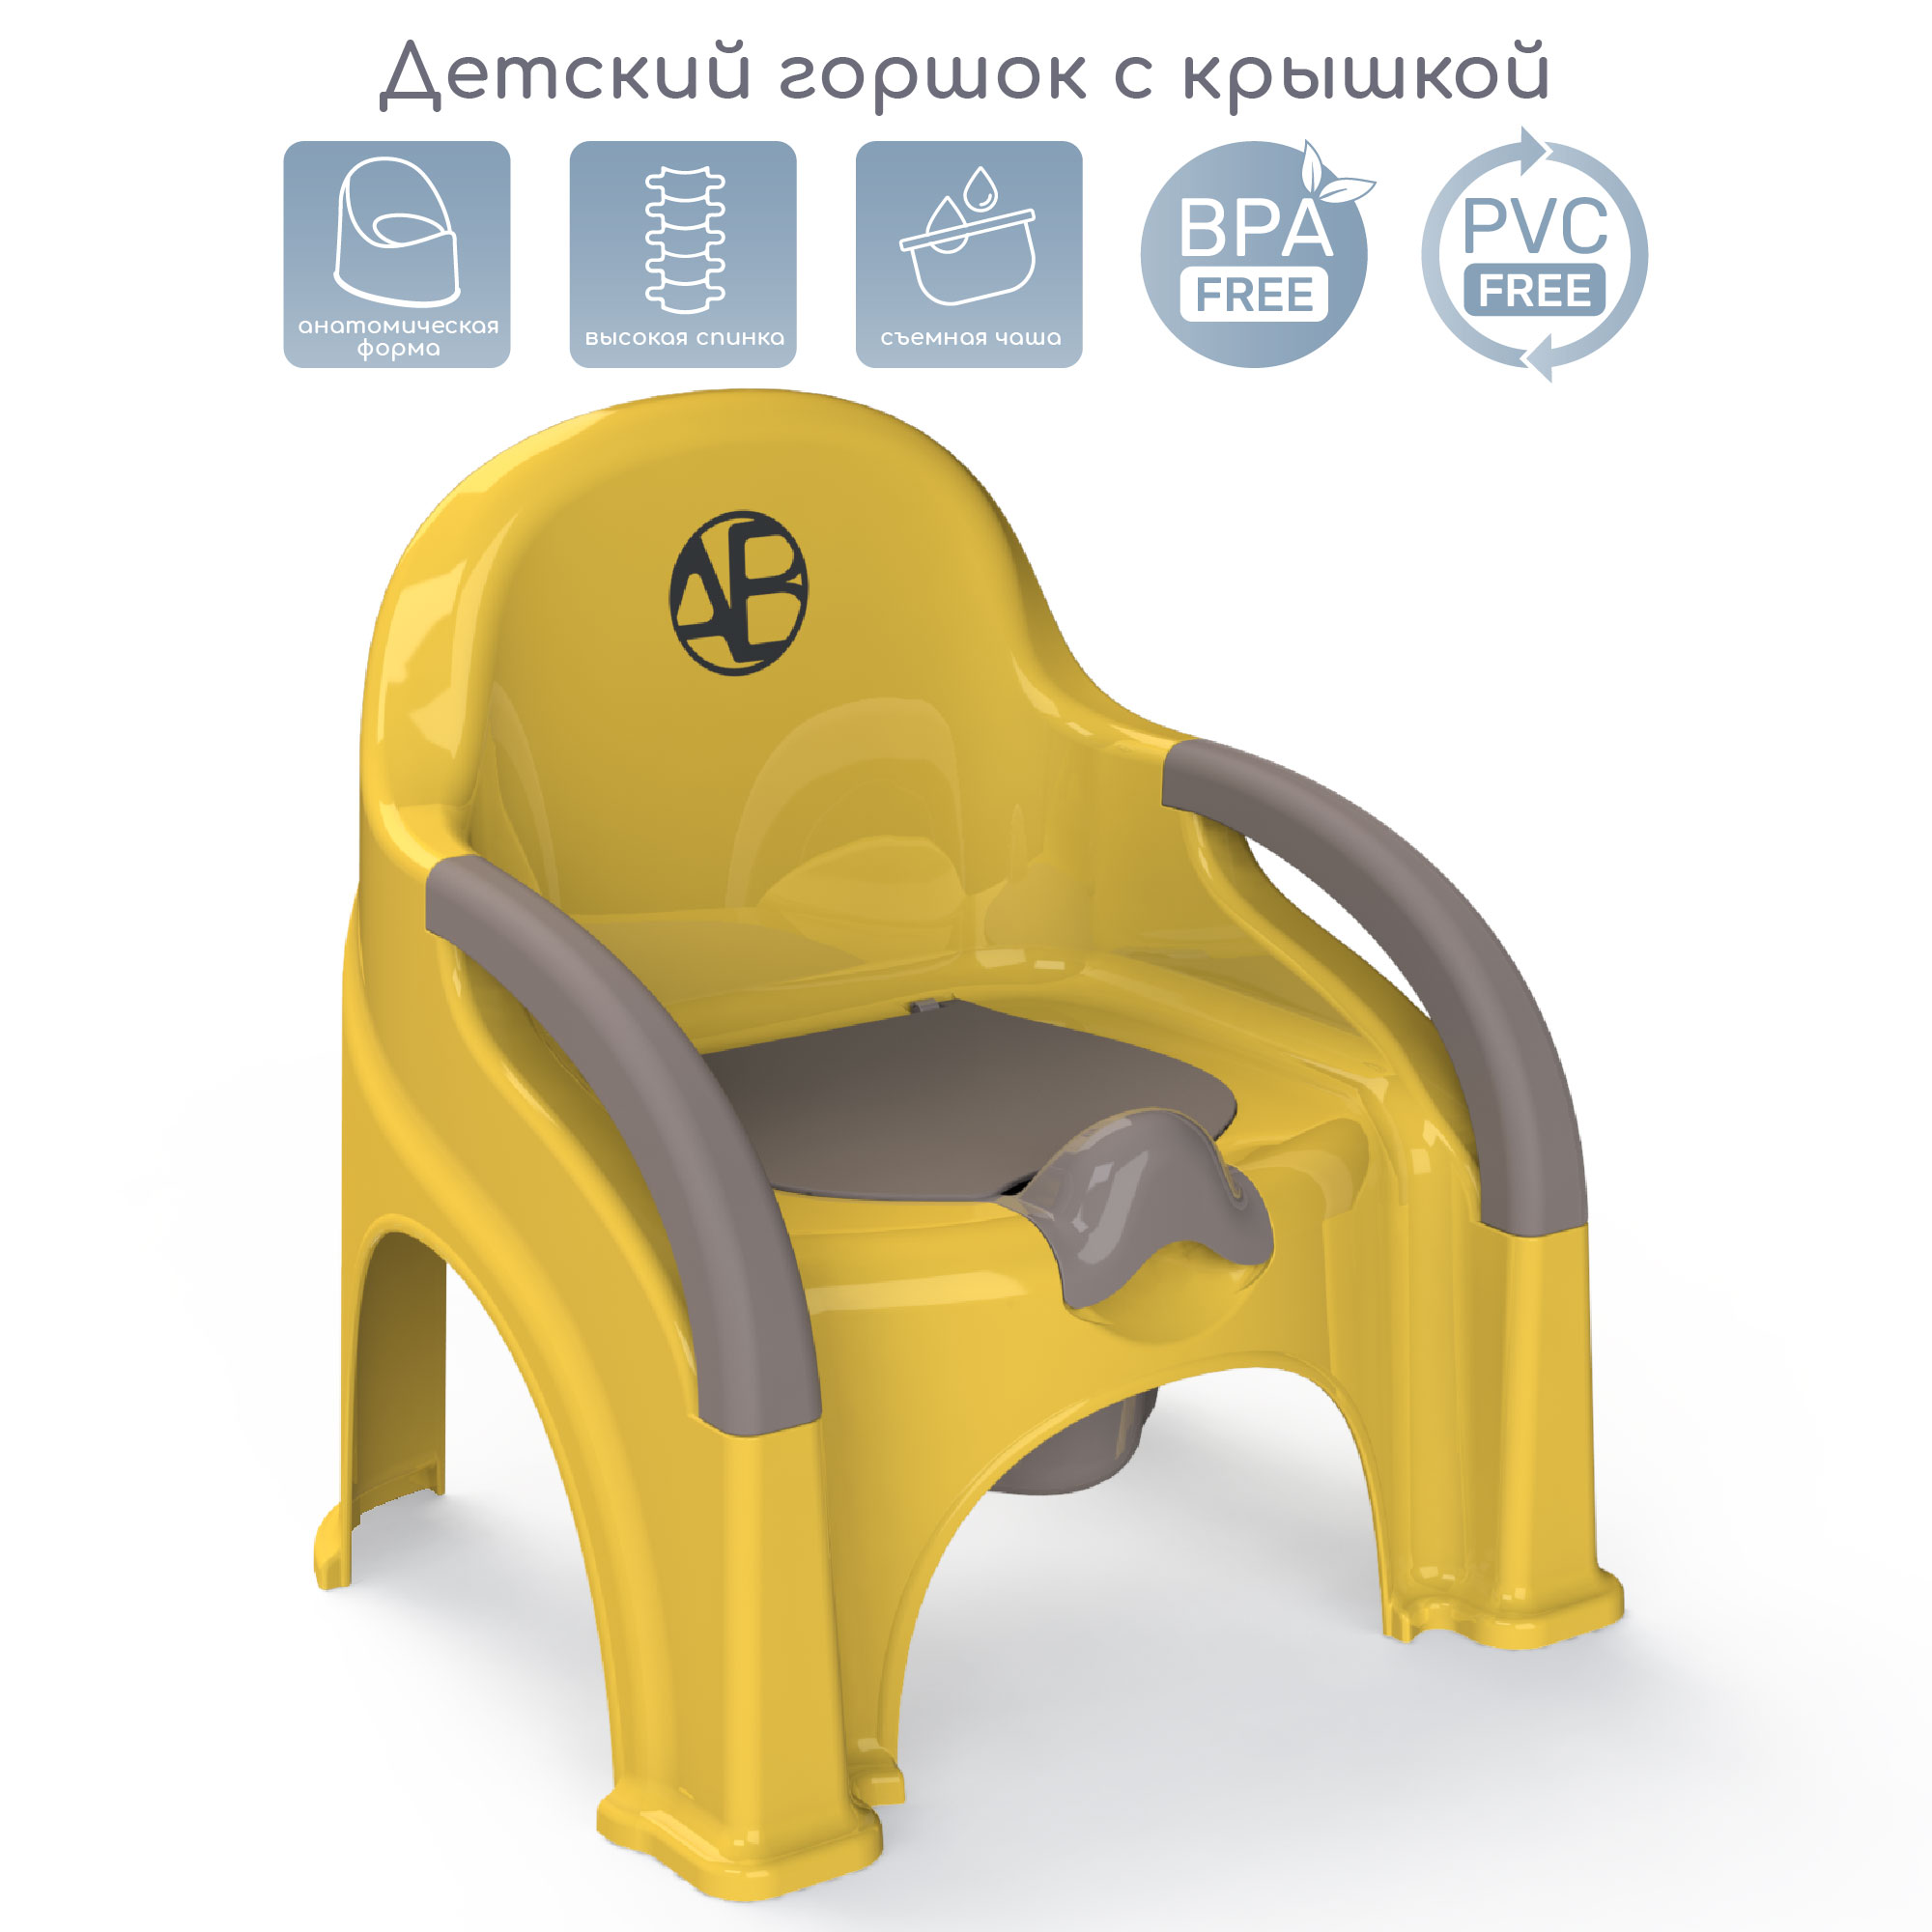 Горшок-стул Amarobaby Baby chair, жёлтый, AB221105BCh/04 комплект одежды для новорожденных kari baby ss21b07900502 розовый жёлтый р 80